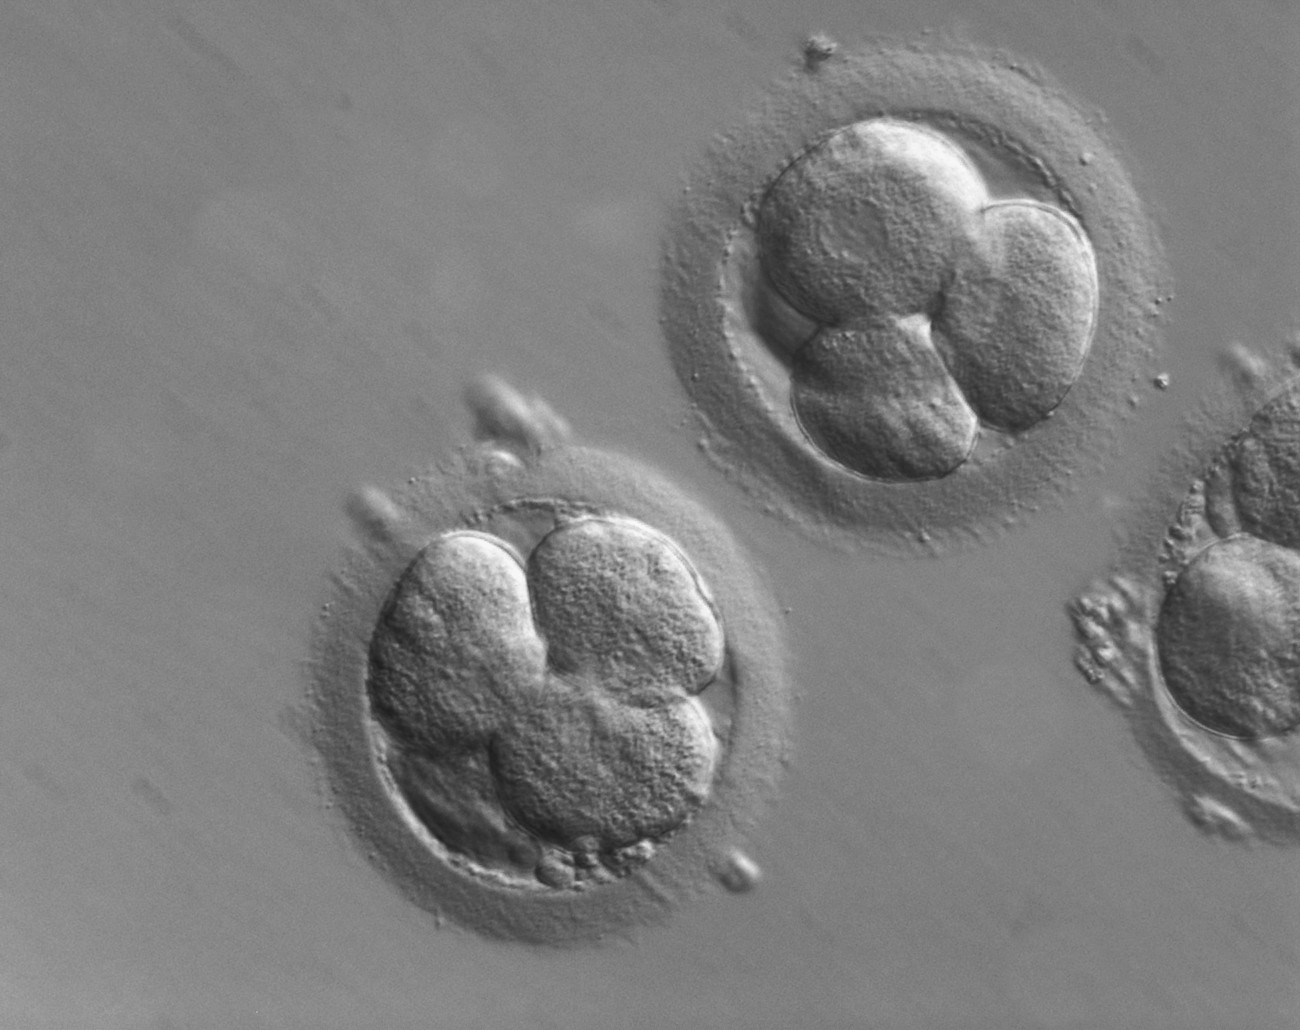 CRISPR: How many micromorts?